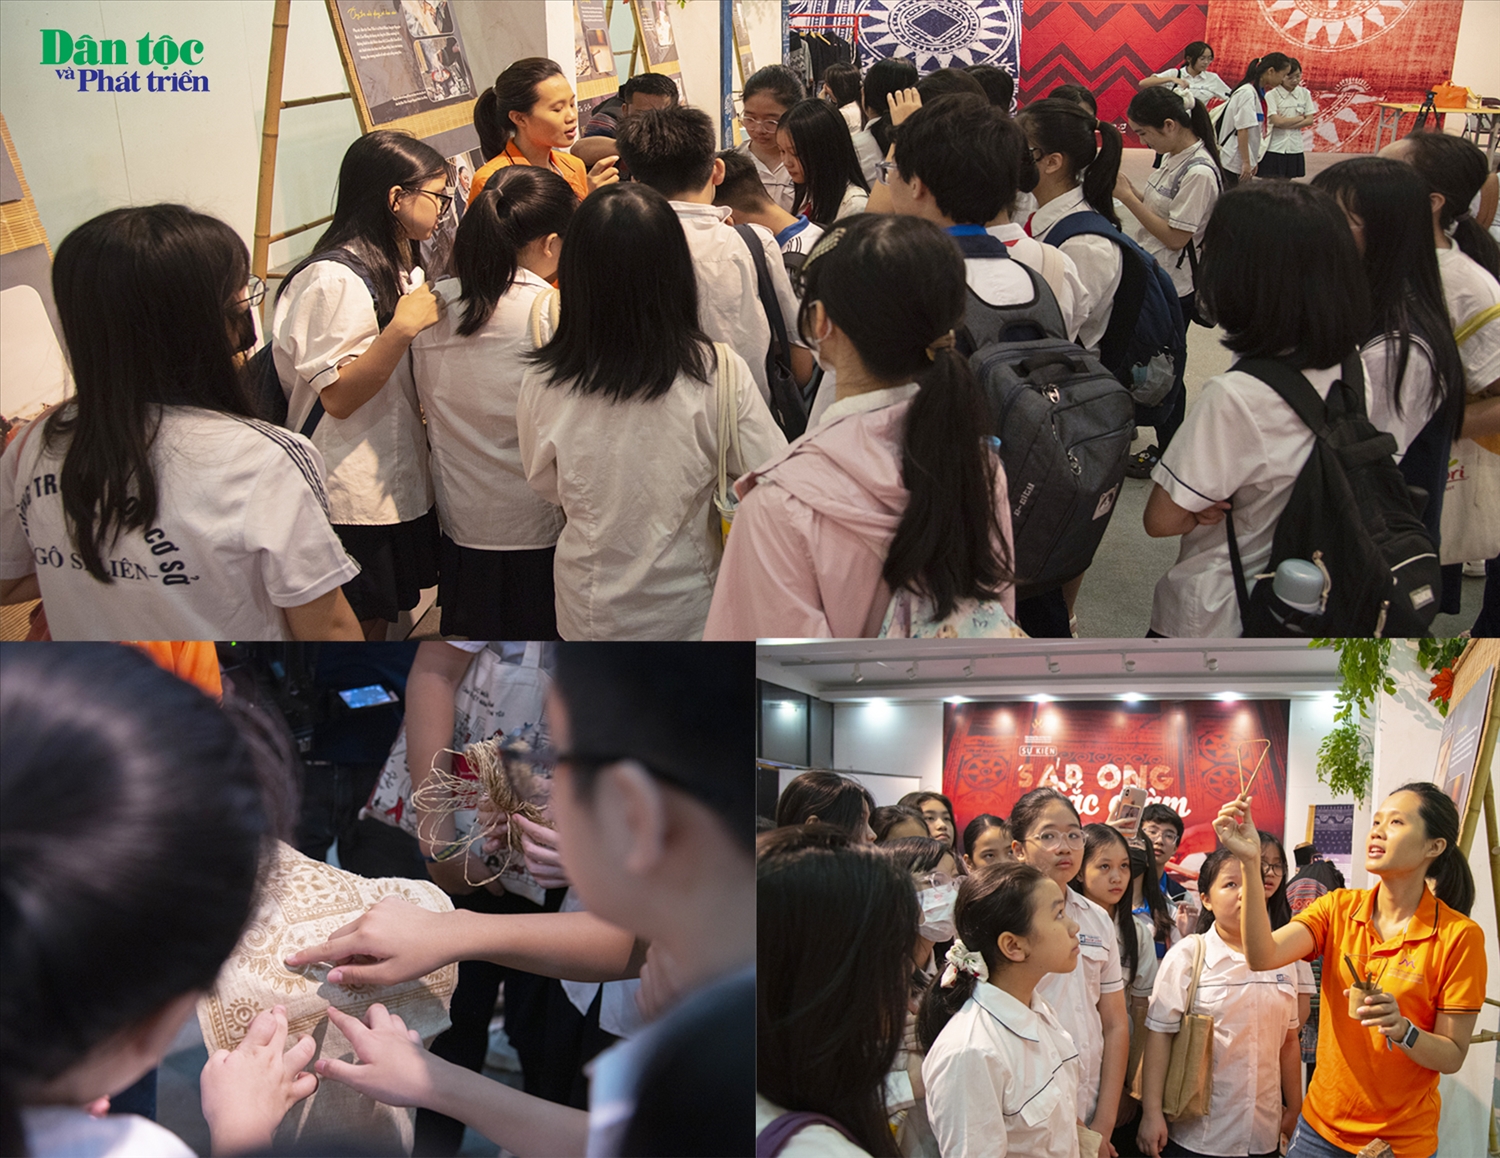 Như đã đưa tin, vừa qua, tại Bảo tàng Phụ nữ Việt Nam đã tổ chức trải nghiệm vẽ sáp ong trên vải mộc. Chương trình nằm trong khuôn khổ sự kiện “Sáp ong - Sắc chàm”, nhân dịp kỷ niệm Ngày hội Đại đoàn kết toàn dân tộc (18/11) và Ngày Di sản Văn hóa Việt Nam (23/11). Sự kiện nằm trong khuôn khổ Dự án thành phần số 8 “Thực hiện bình đẳng giới và giải quyết những vấn đề cấp thiết đối với phụ nữ và trẻ em” thuộc Chương trình “Mục tiêu Quốc gia phát triển kinh tế xã hội vùng đồng bào dân tộc thiểu số và miền núi giai đoạn 2021 – 2030.